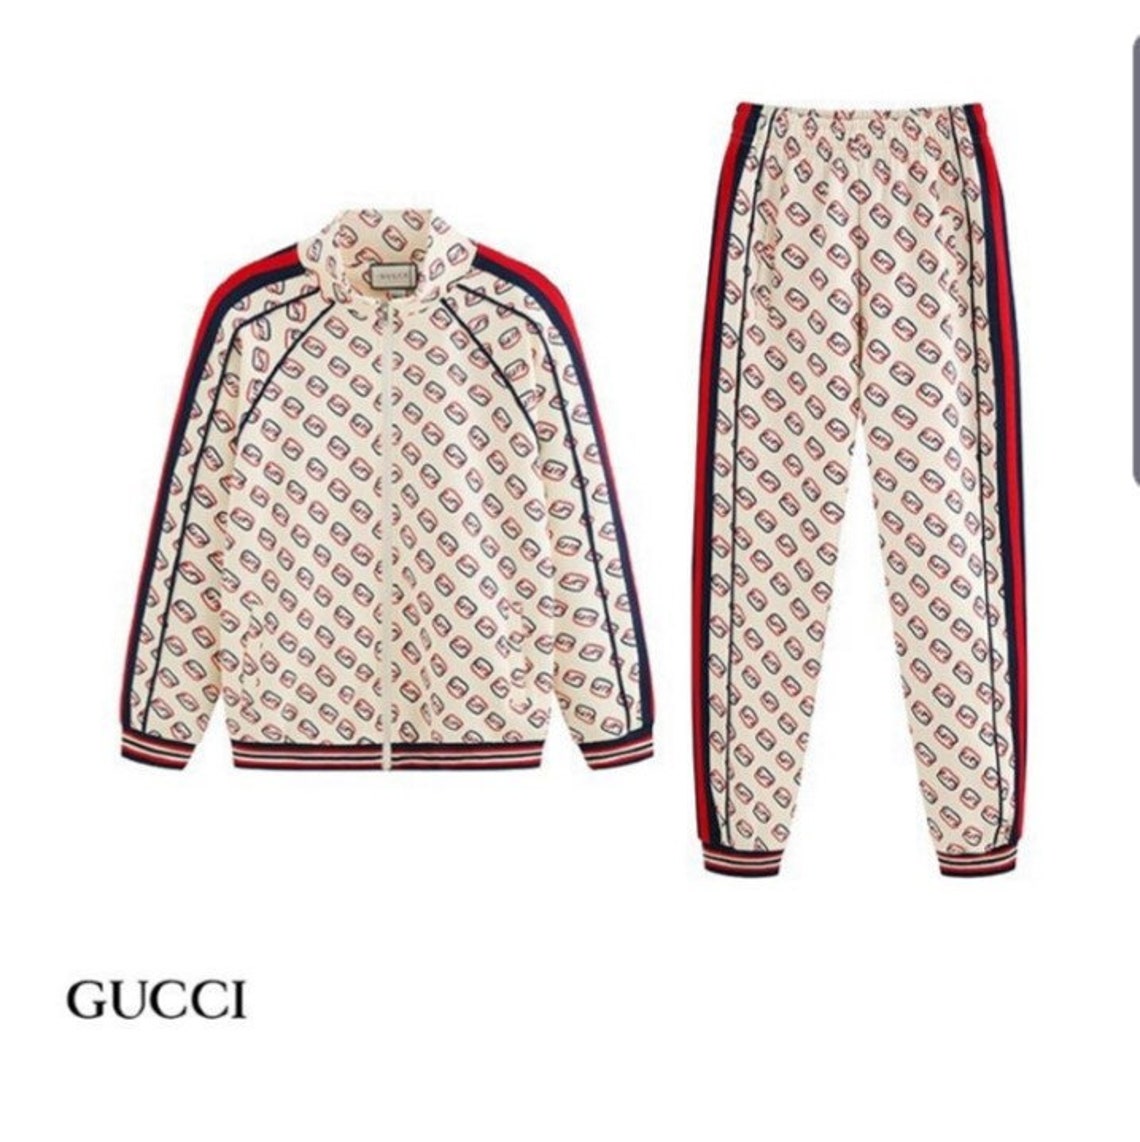 Unisex Gucci tracksuit 2 pieces Zipper Sweatshirt pants set | Etsy